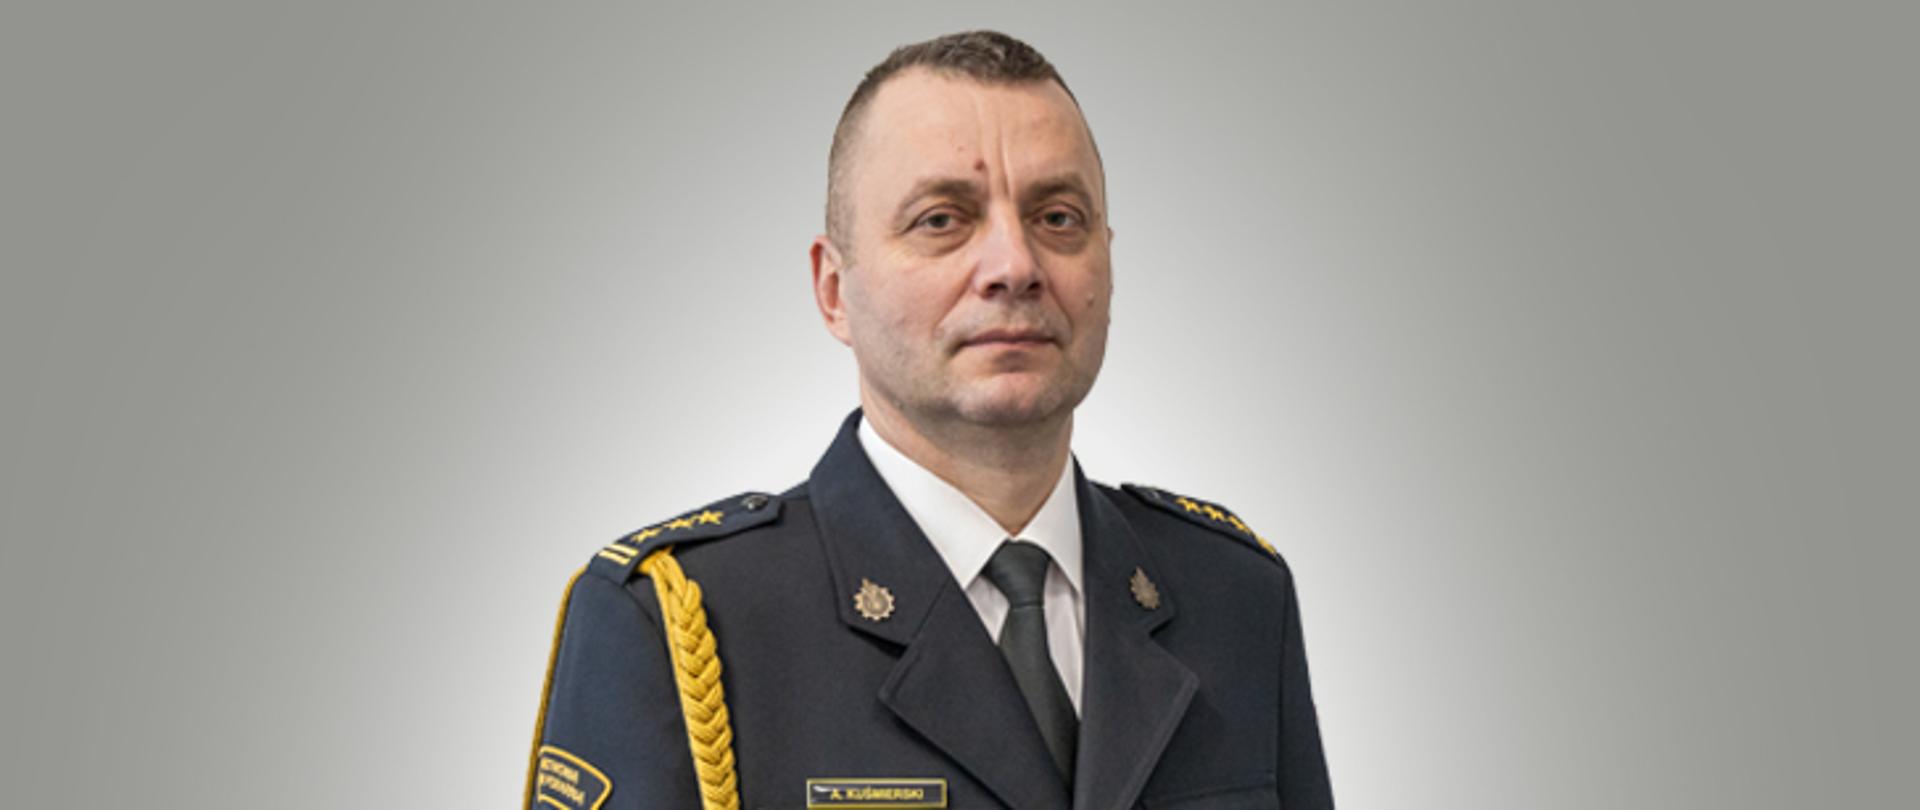 Zastępca Opolskiego Komendanta Wojewódzkiego PSP st. bryg. mgr inż. Arkadiusz KUŚMIERSKI w mundurze galowym.